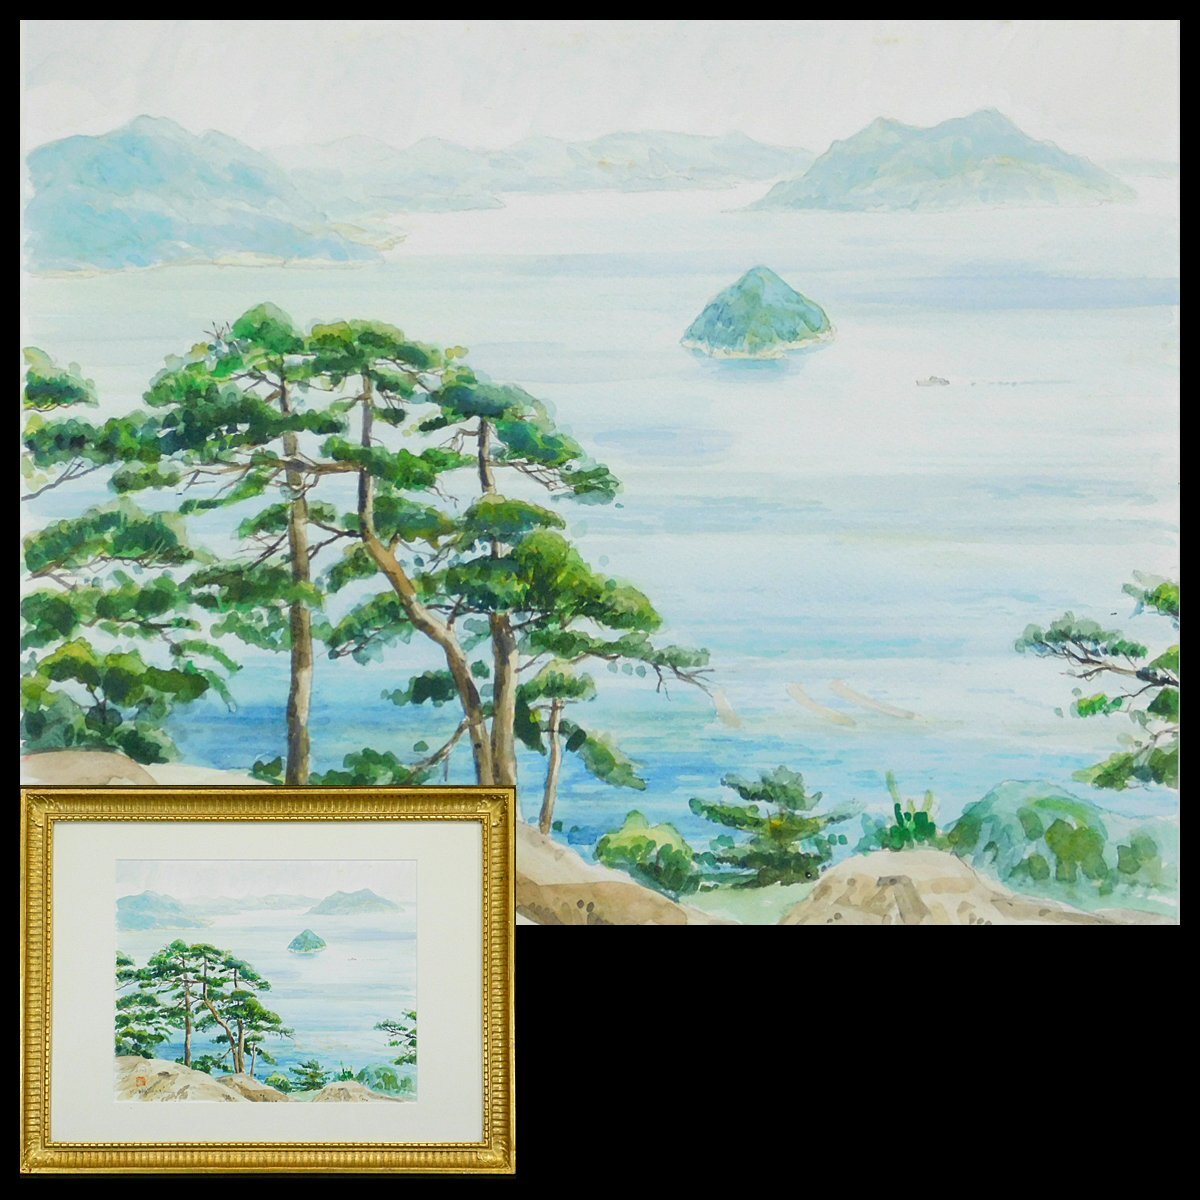 Kazuyuki Shimazu Aki Pintura de acuarela del mar Enmarcada (co-sellada) Miembro de Sanki Nitten Exposición contemporánea japonesa-francesa AC24031707, cuadro, acuarela, Naturaleza, Pintura de paisaje